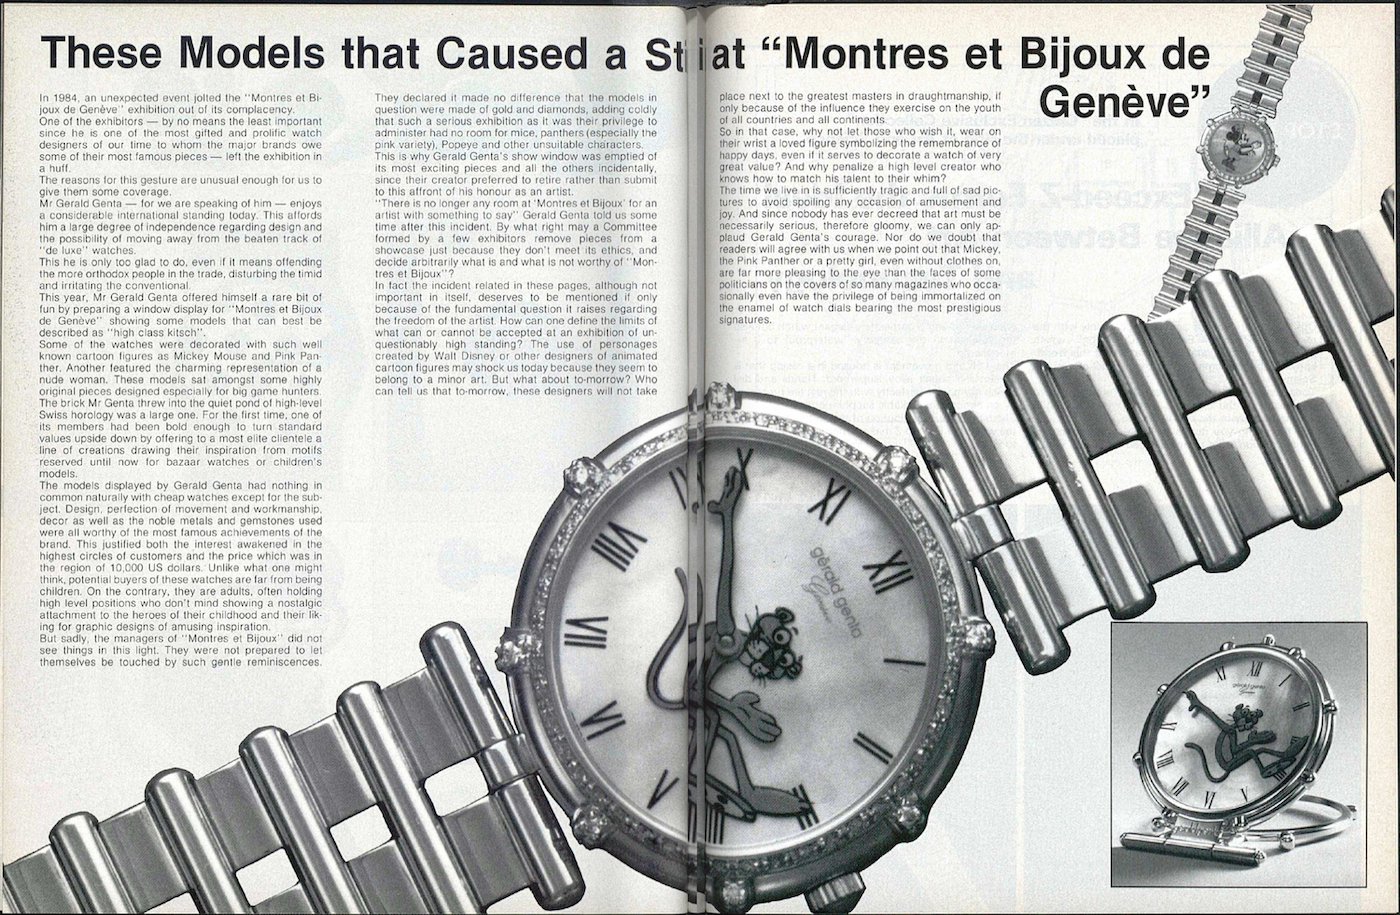 1984: When Gerald Genta challenged the watchmaking establishment